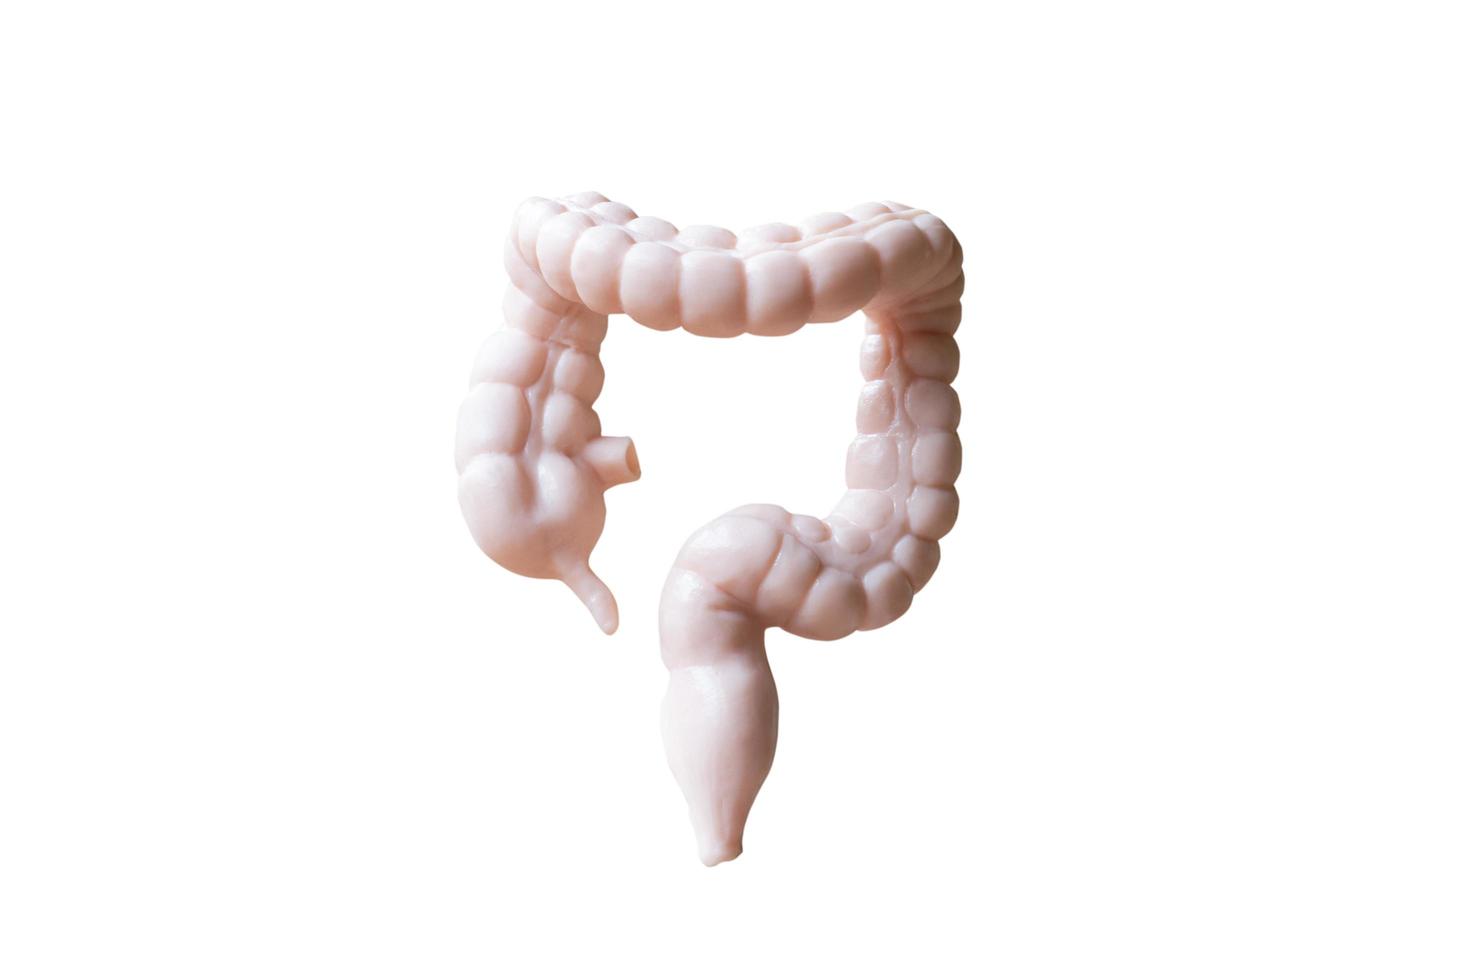 Modèle humain anatomique du gros intestin isolé sur fond blanc photo